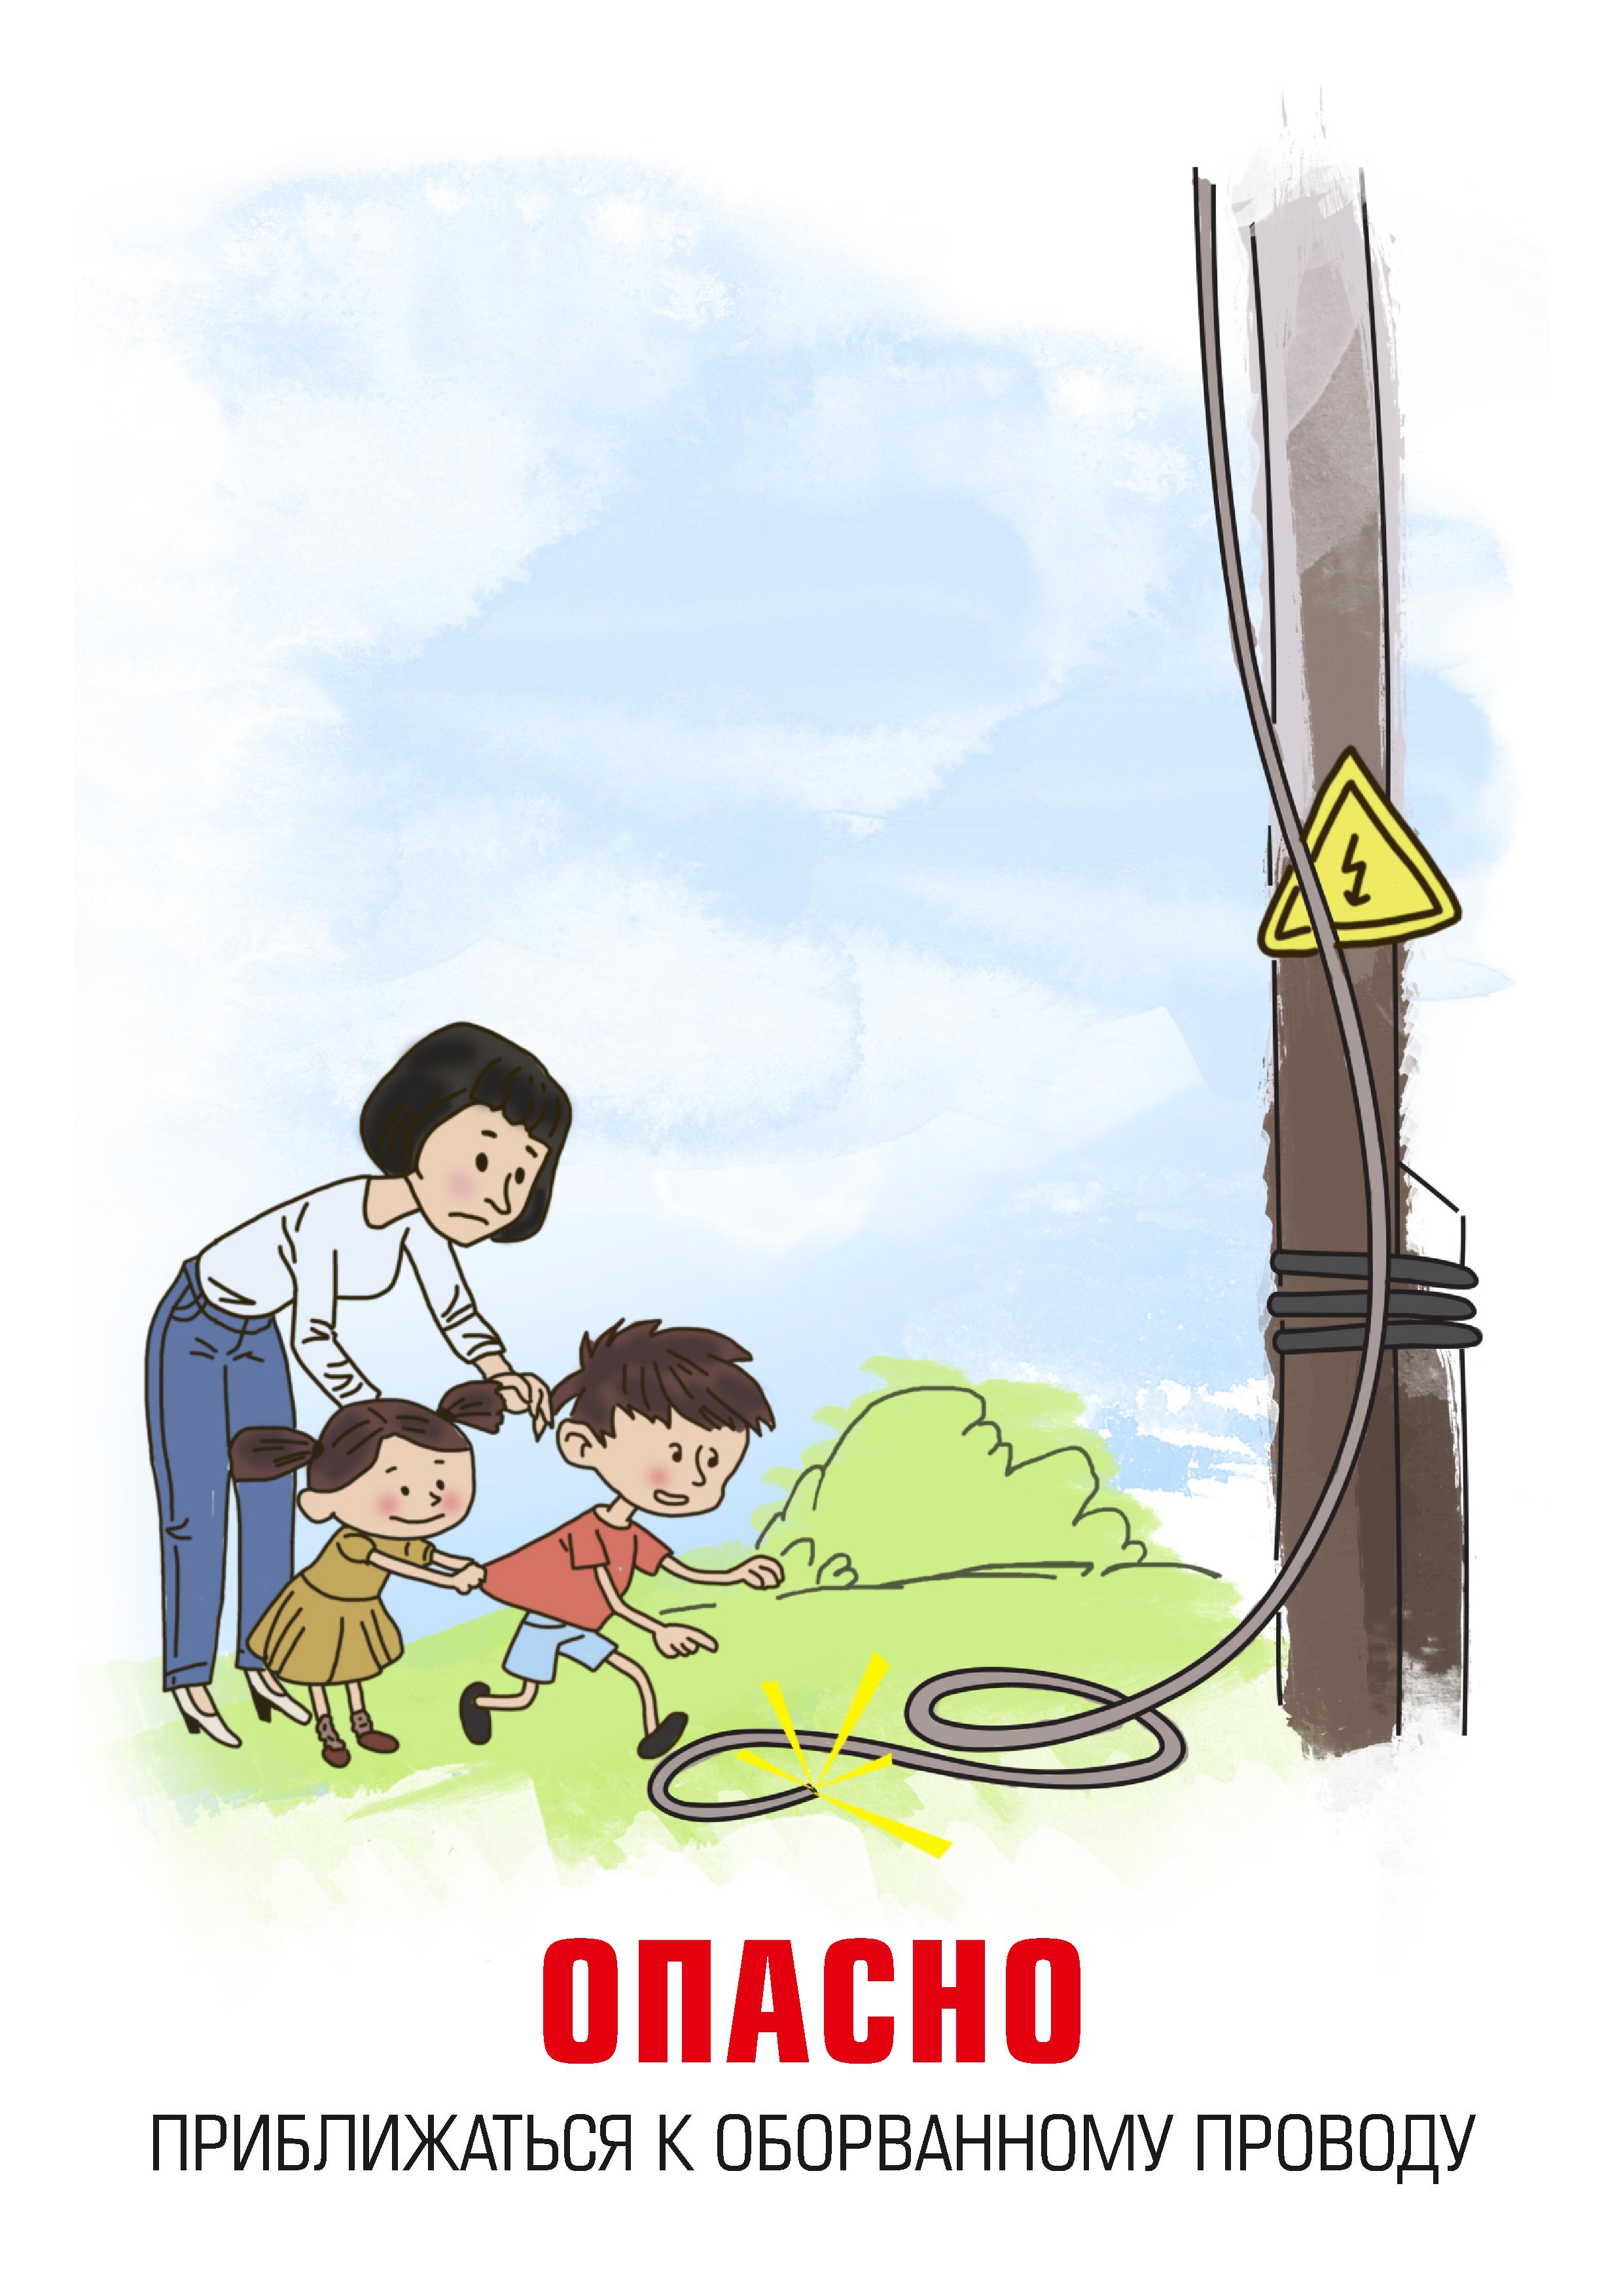 Правила электробезопасности на улице для детей